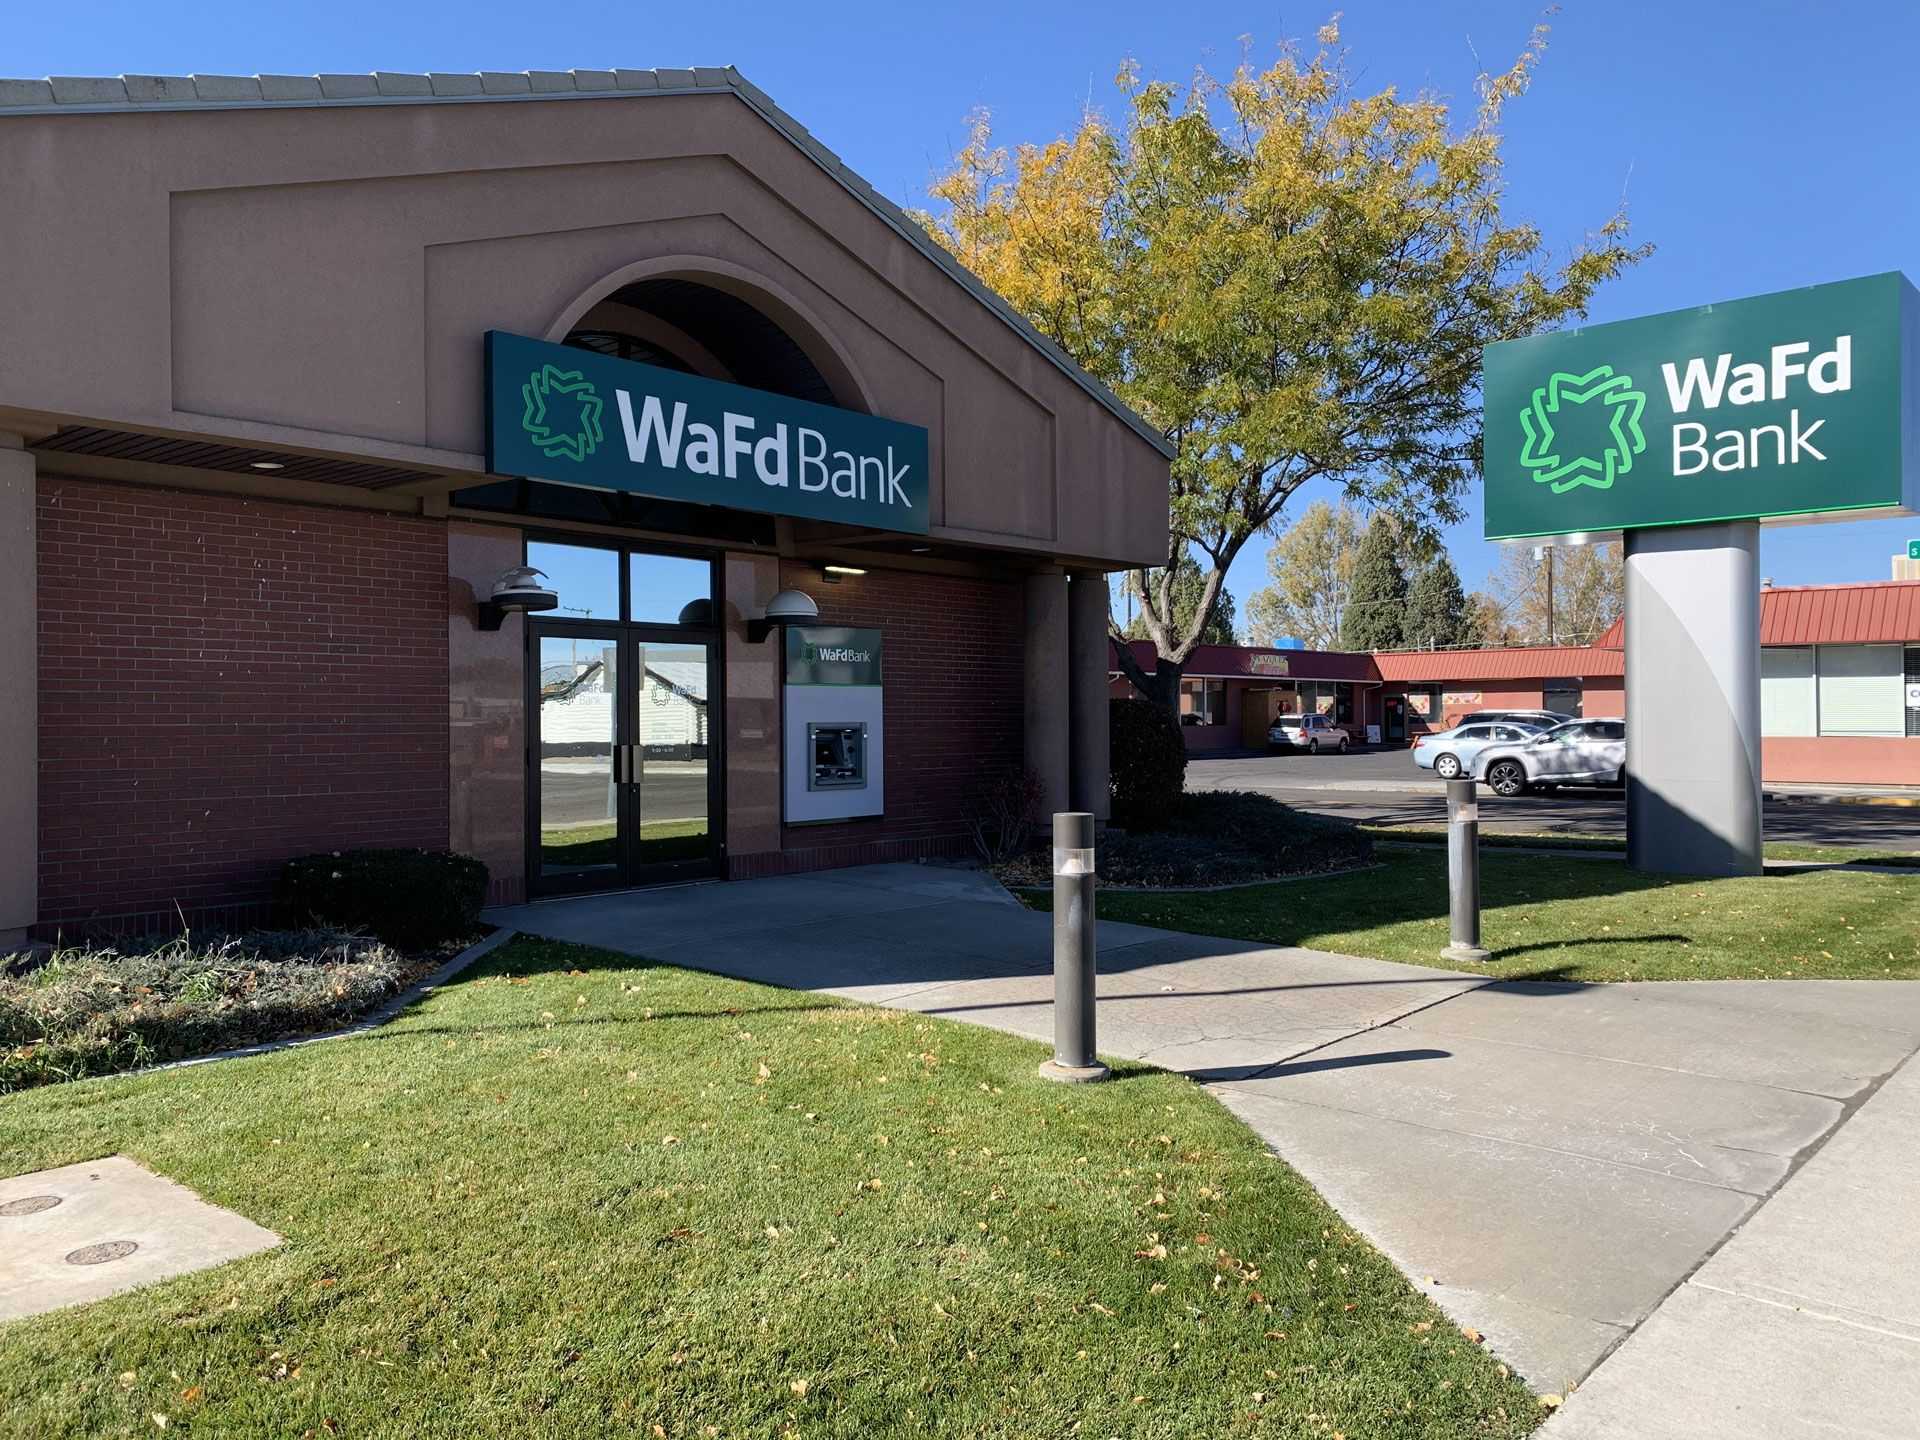 WaFd Bank in Blackfoot, Idaho #1033 - Washington Federal.